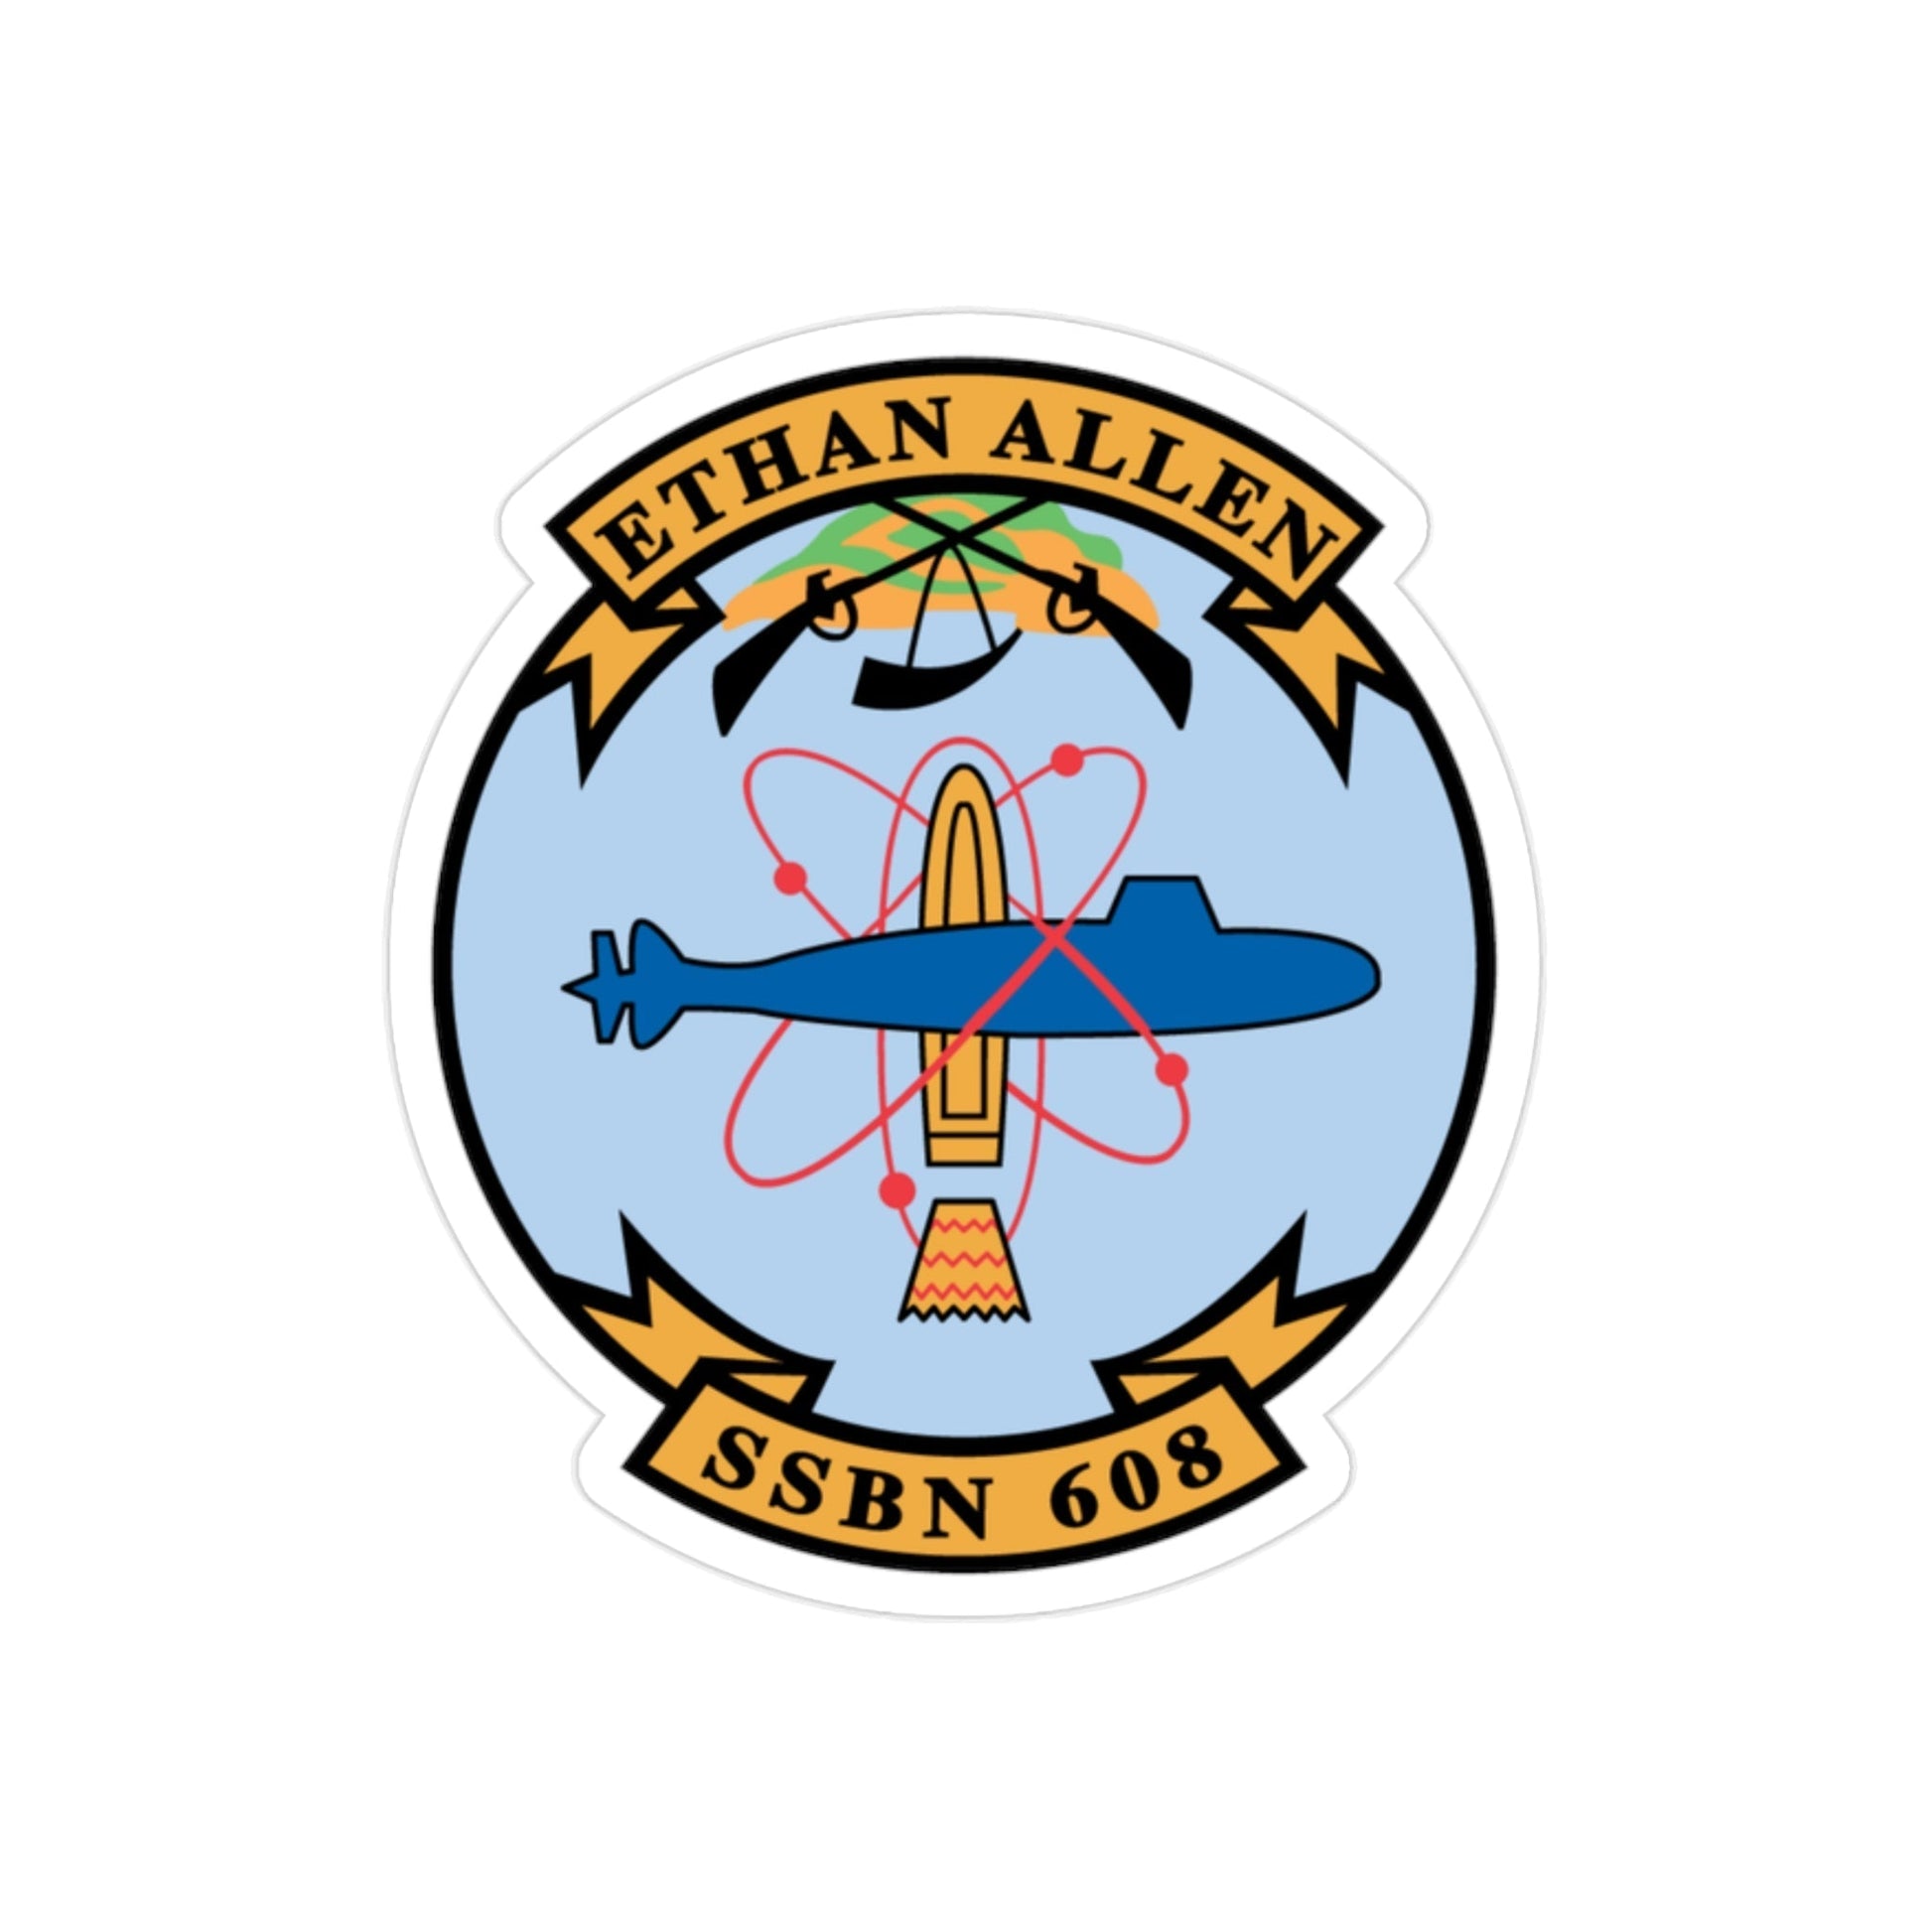 Ethan Allen SSBN 608 (U.S. Navy) Transparent STICKER Die-Cut Vinyl Decal-2 Inch-The Sticker Space